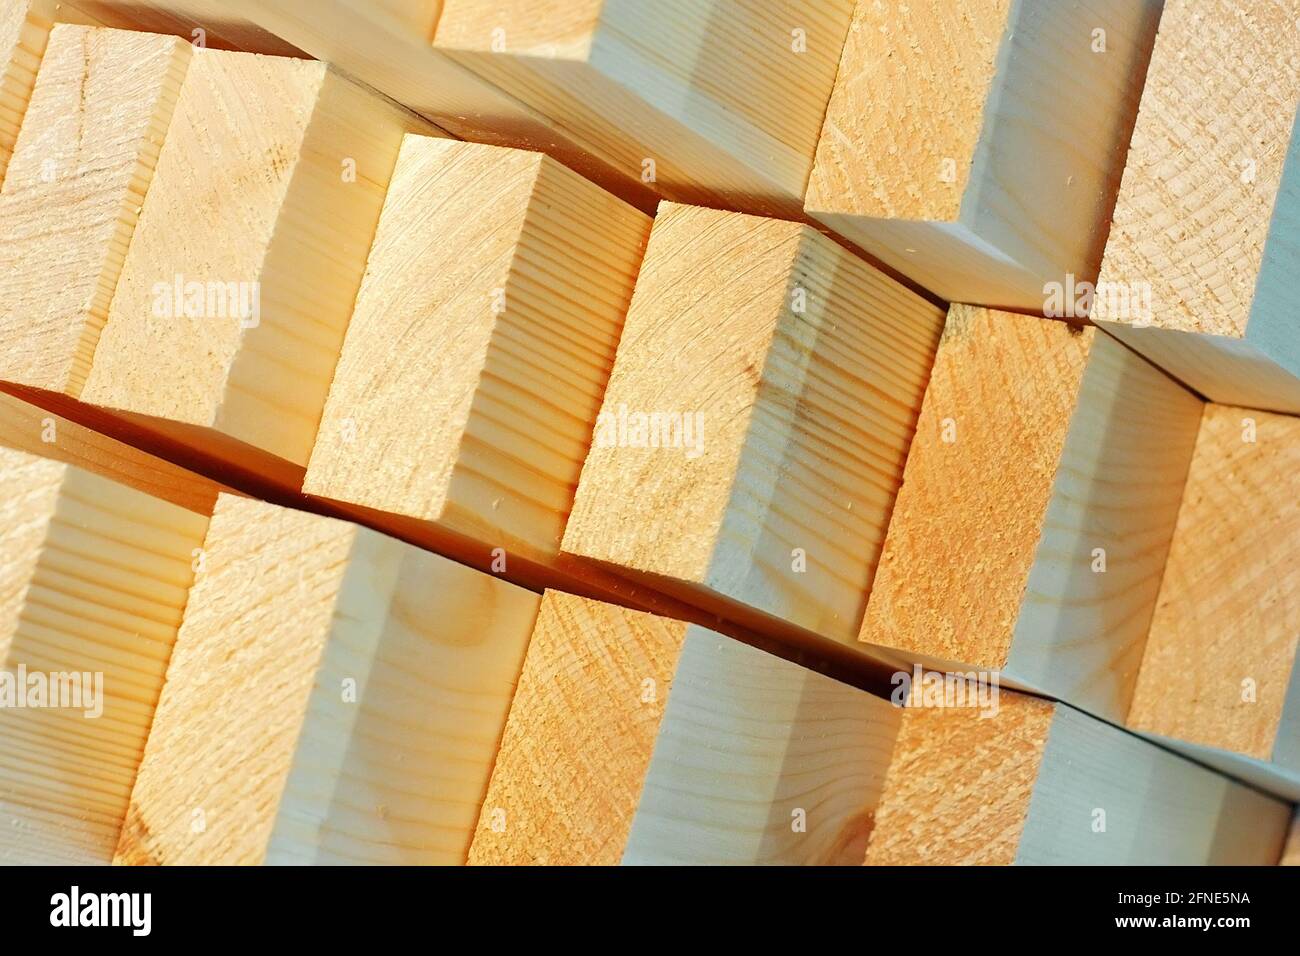 Dies sind die Enden der gehobelten Holzstäbe im Sägewerk oder in der Schreinerei. Sägen Trocknen und Vermarktung von Holz. Industrieller Hintergrund Stockfoto